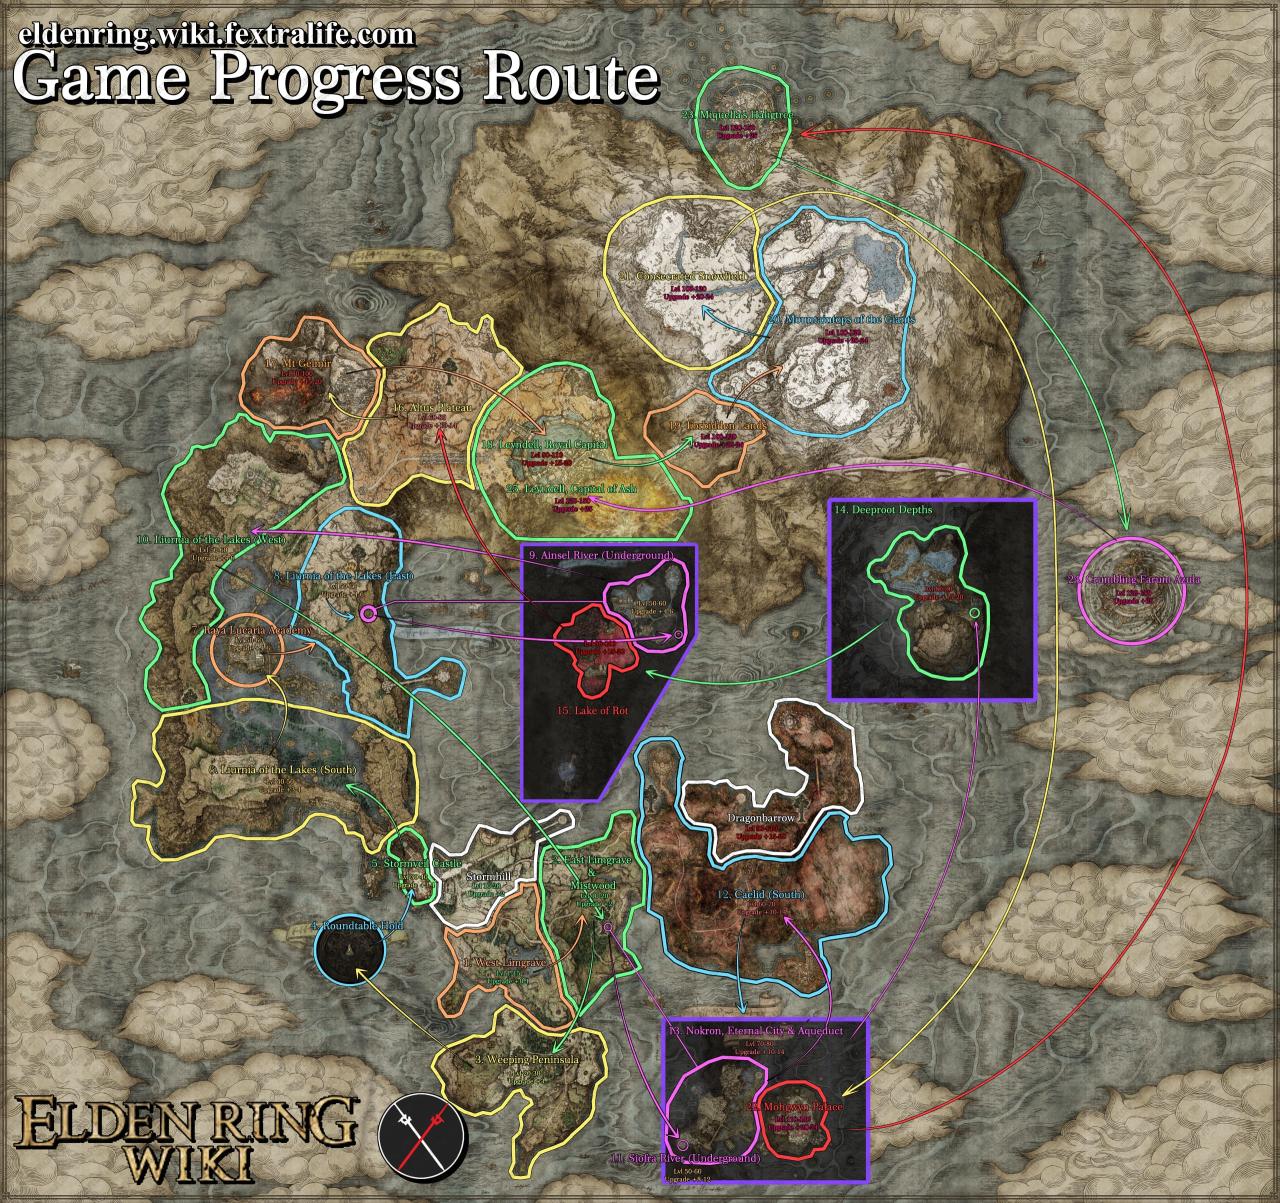 Elden ring progress guide